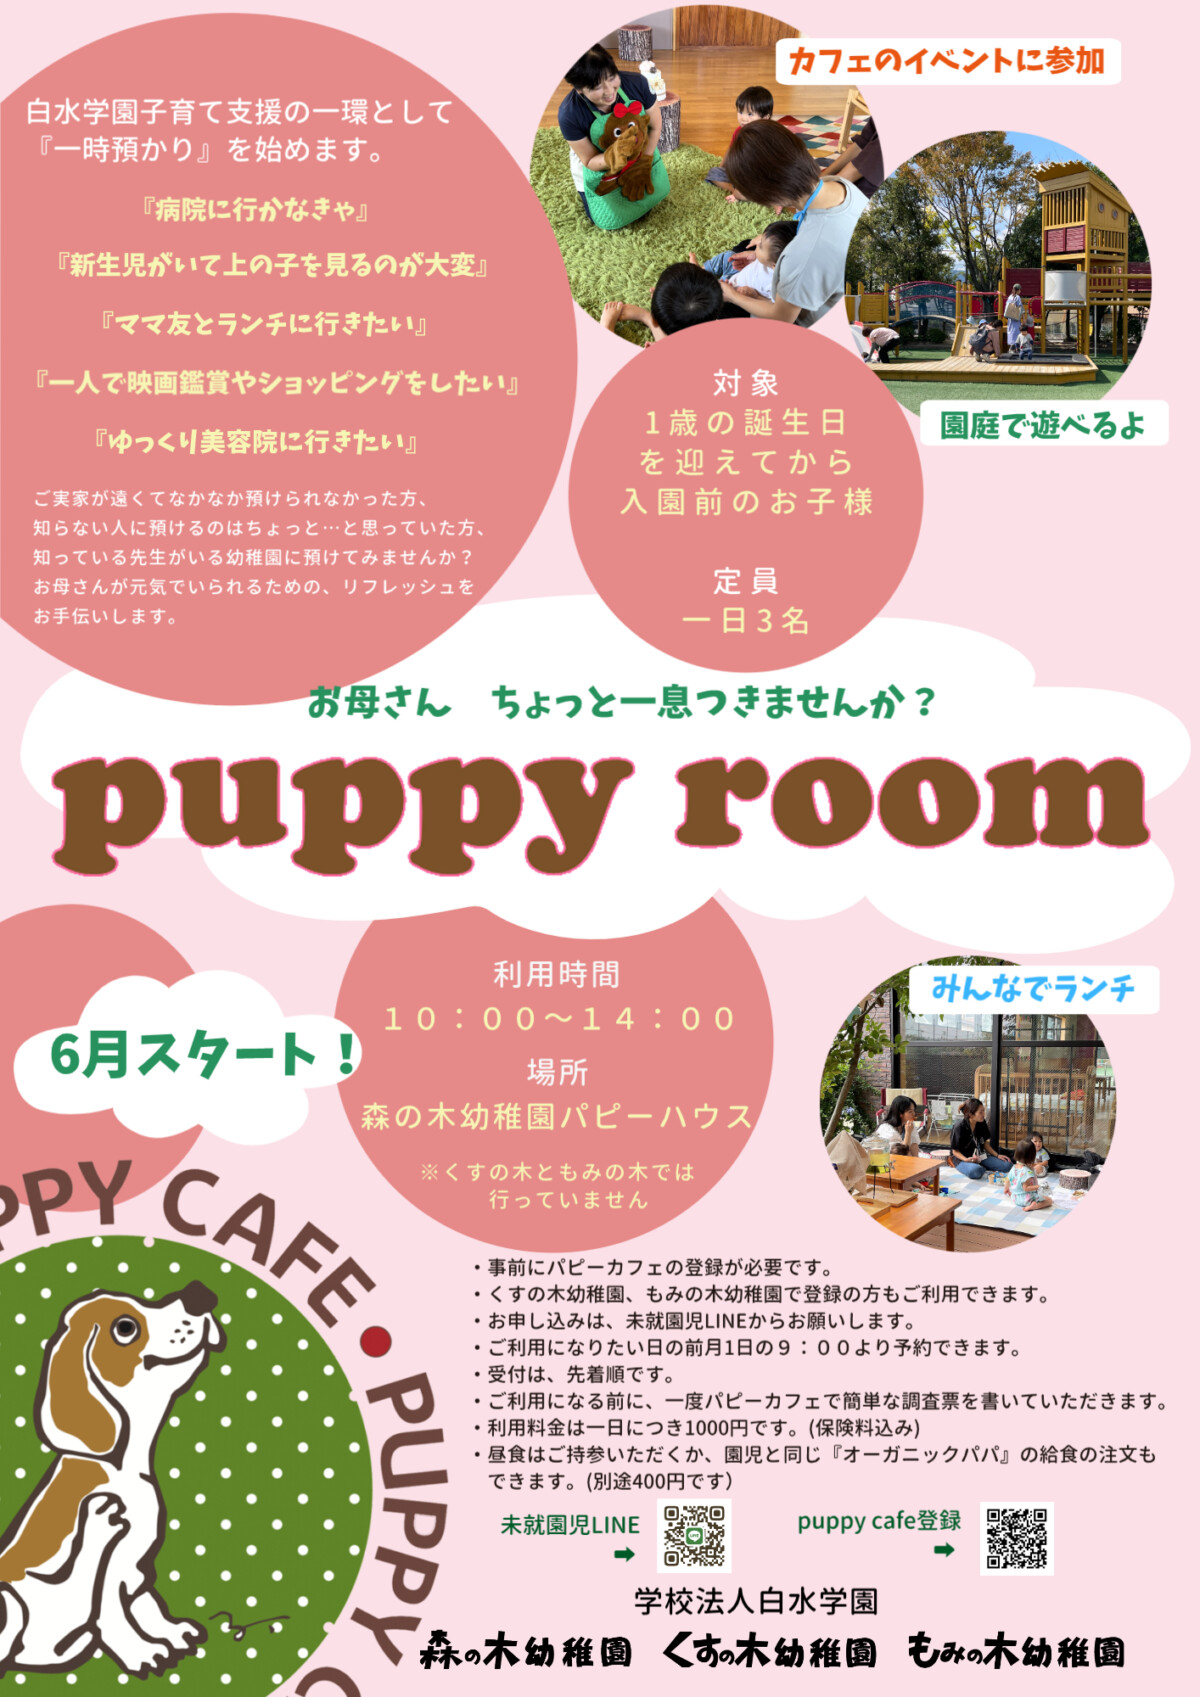 ６月より、一時預かり『puppy room』が始まります！